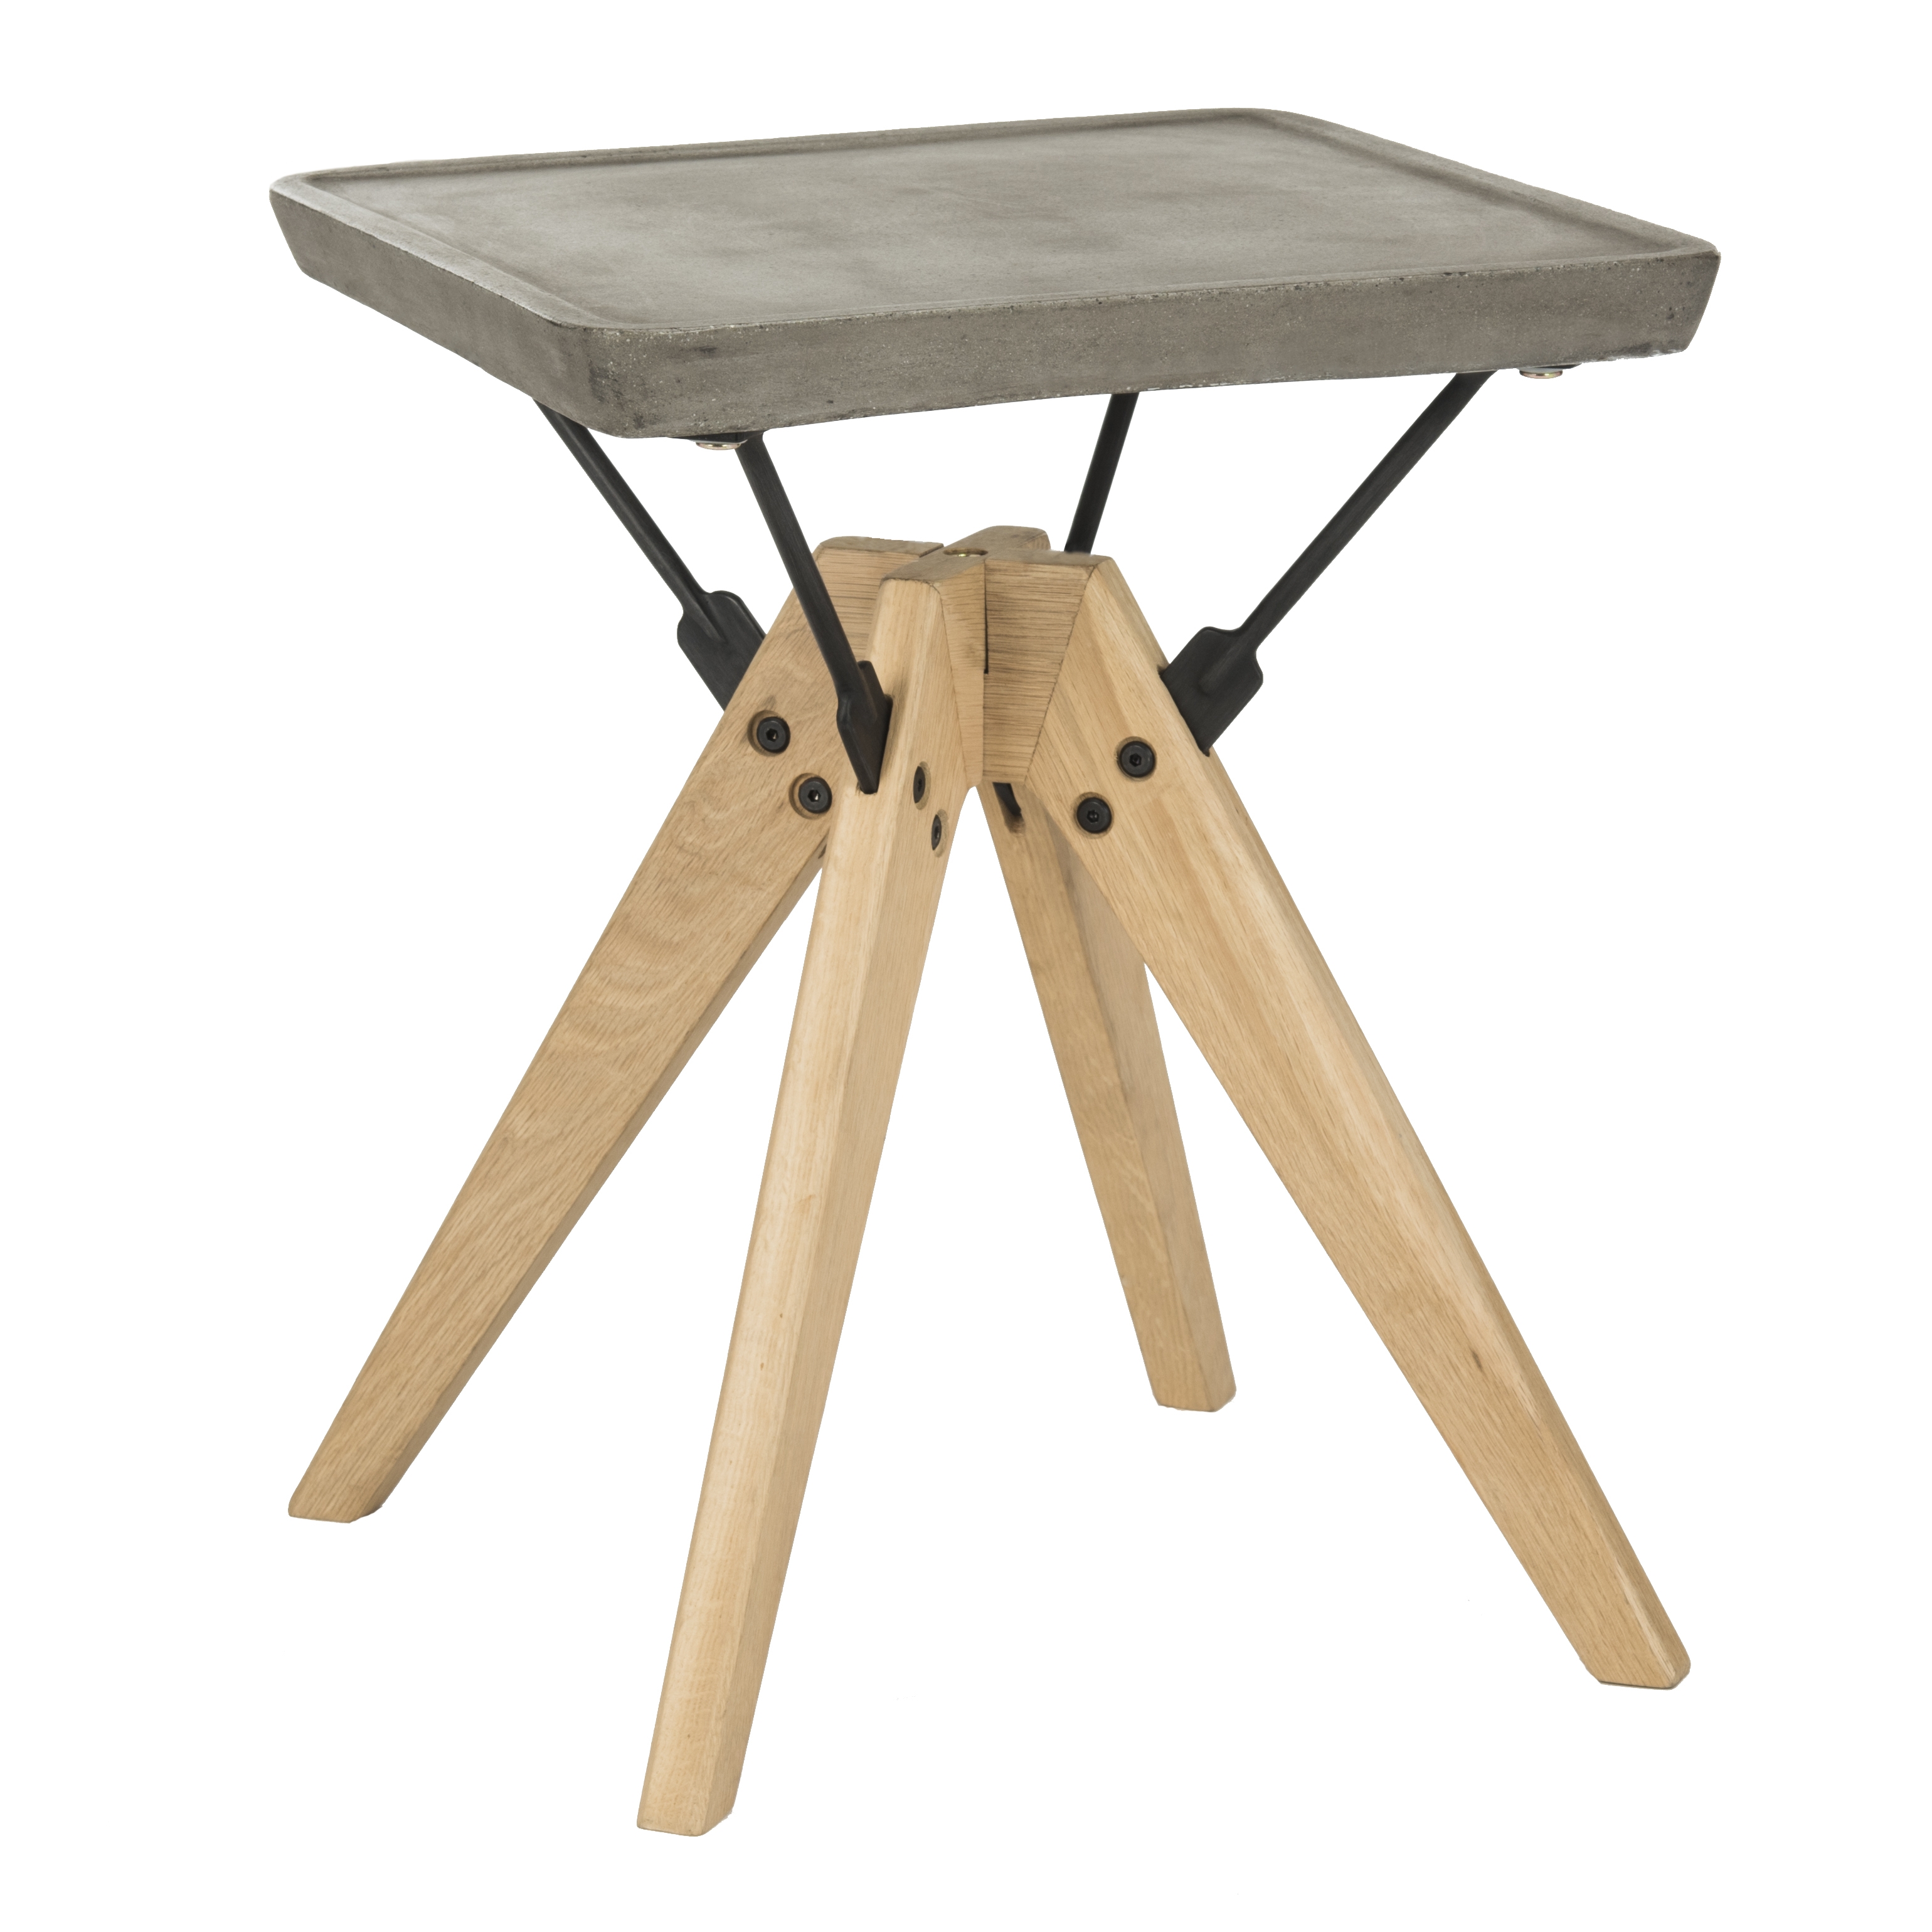 Marcio Indoor/Outdoor Modern Concrete 19.69-Inch H Side Table - Dark Grey - Safavieh - Image 1